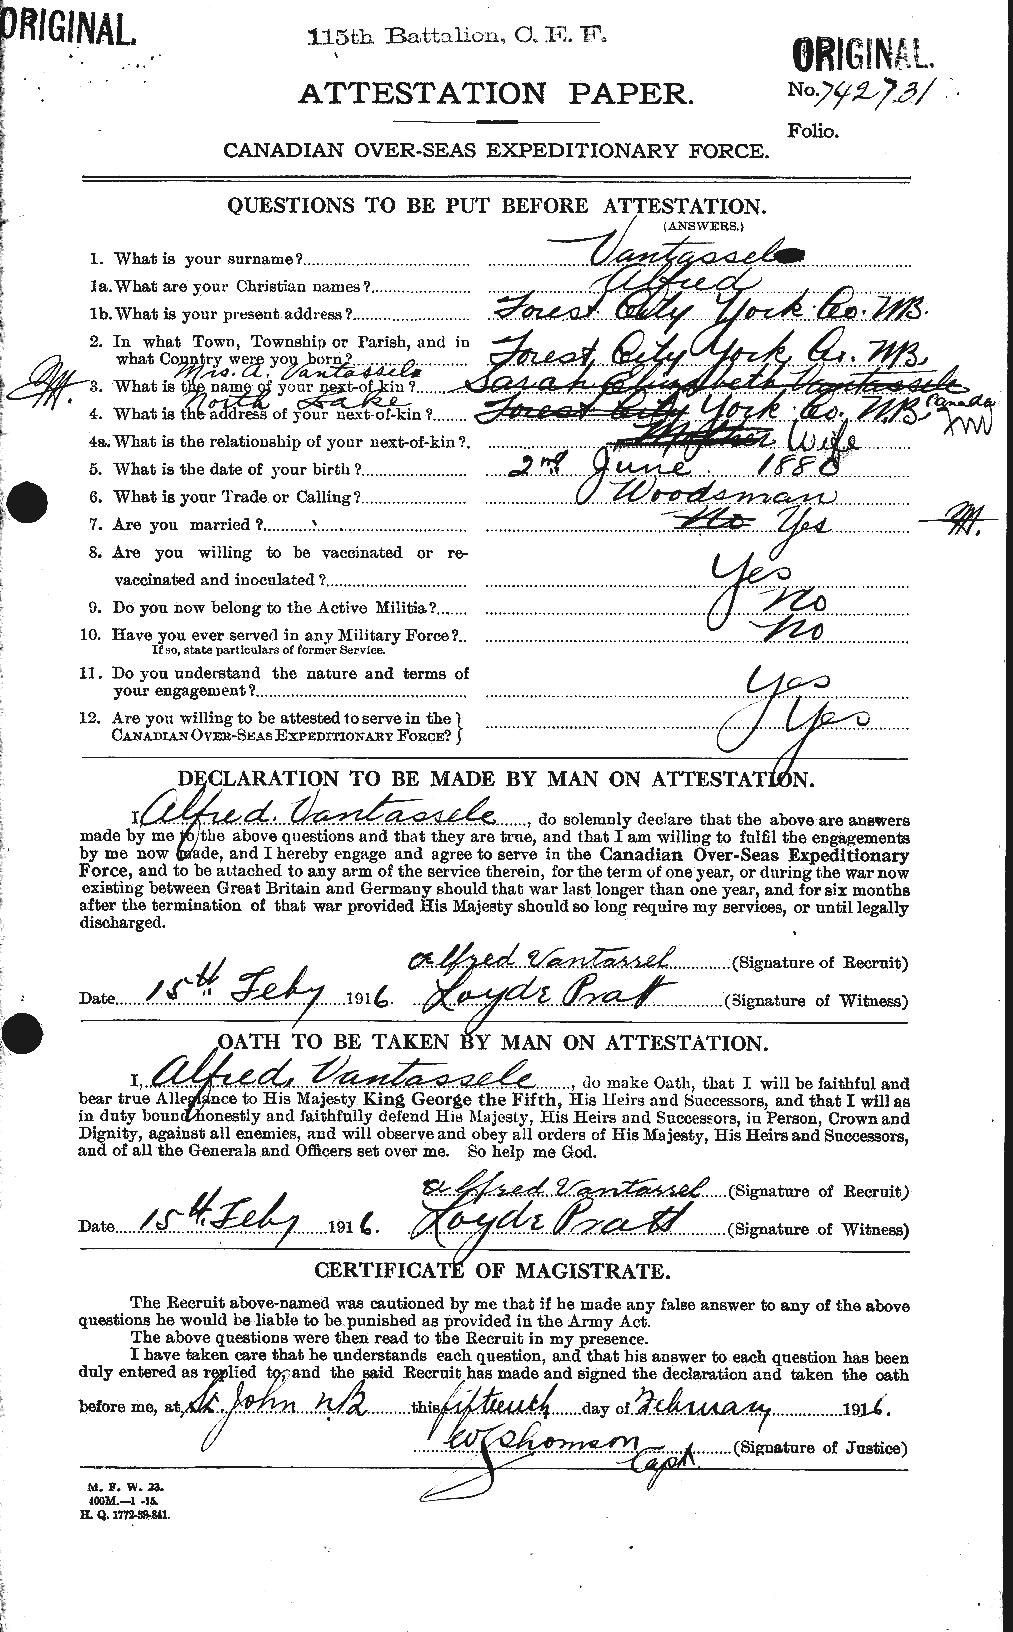 Dossiers du Personnel de la Première Guerre mondiale - CEC 648952a